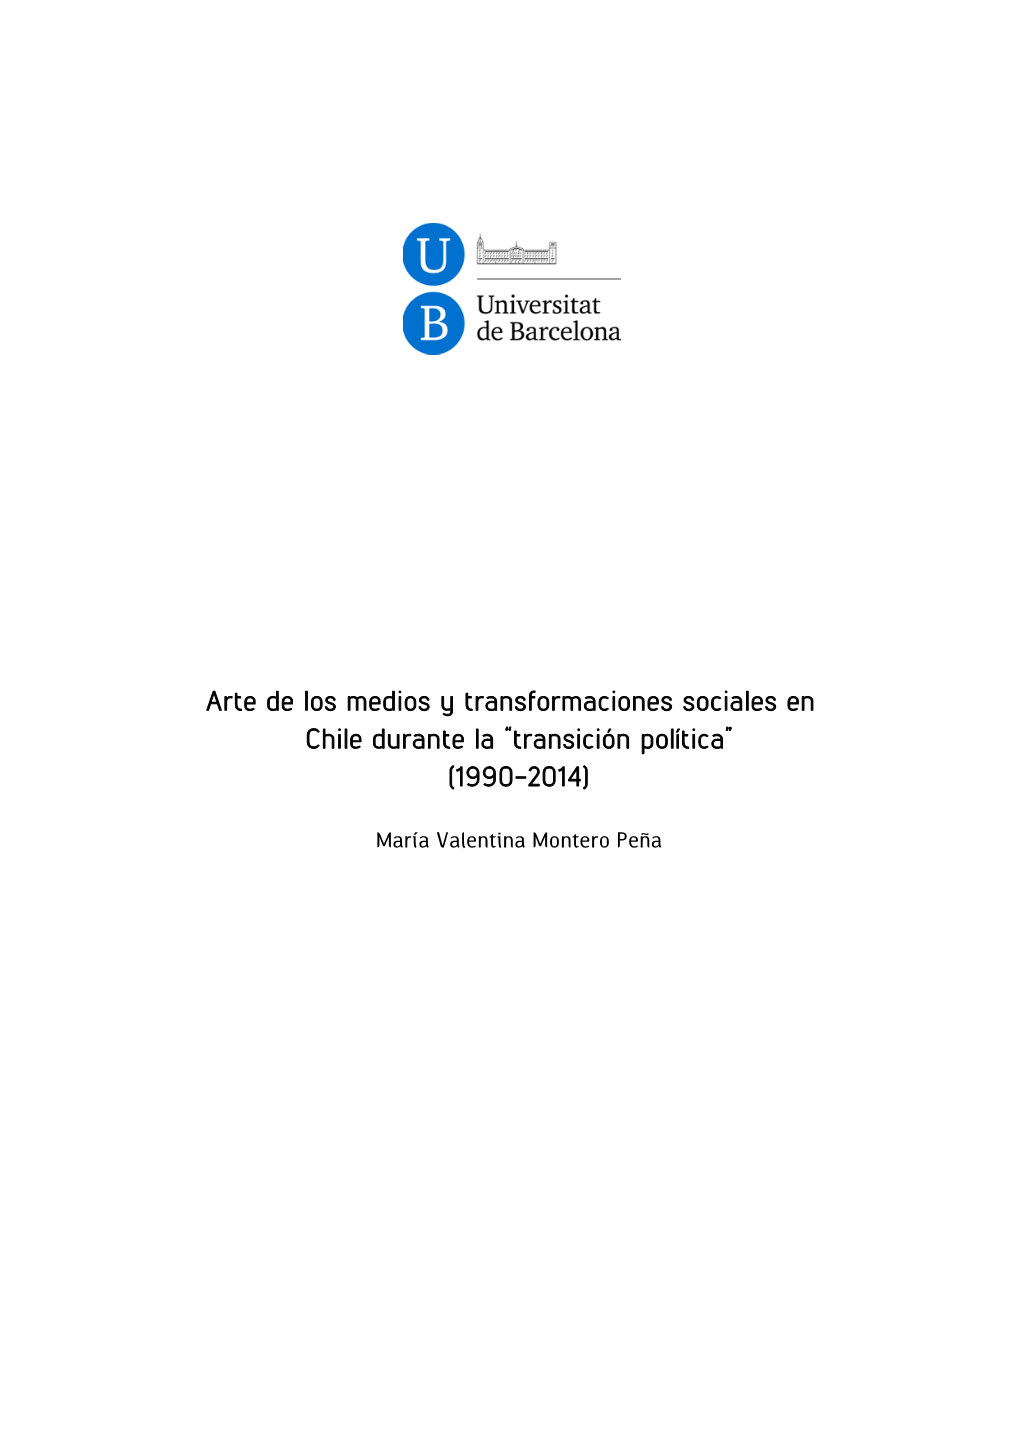 Arte De Los Medios Y Transformaciones Sociales En Chile Durante La “Transición Política” (1990-2014)